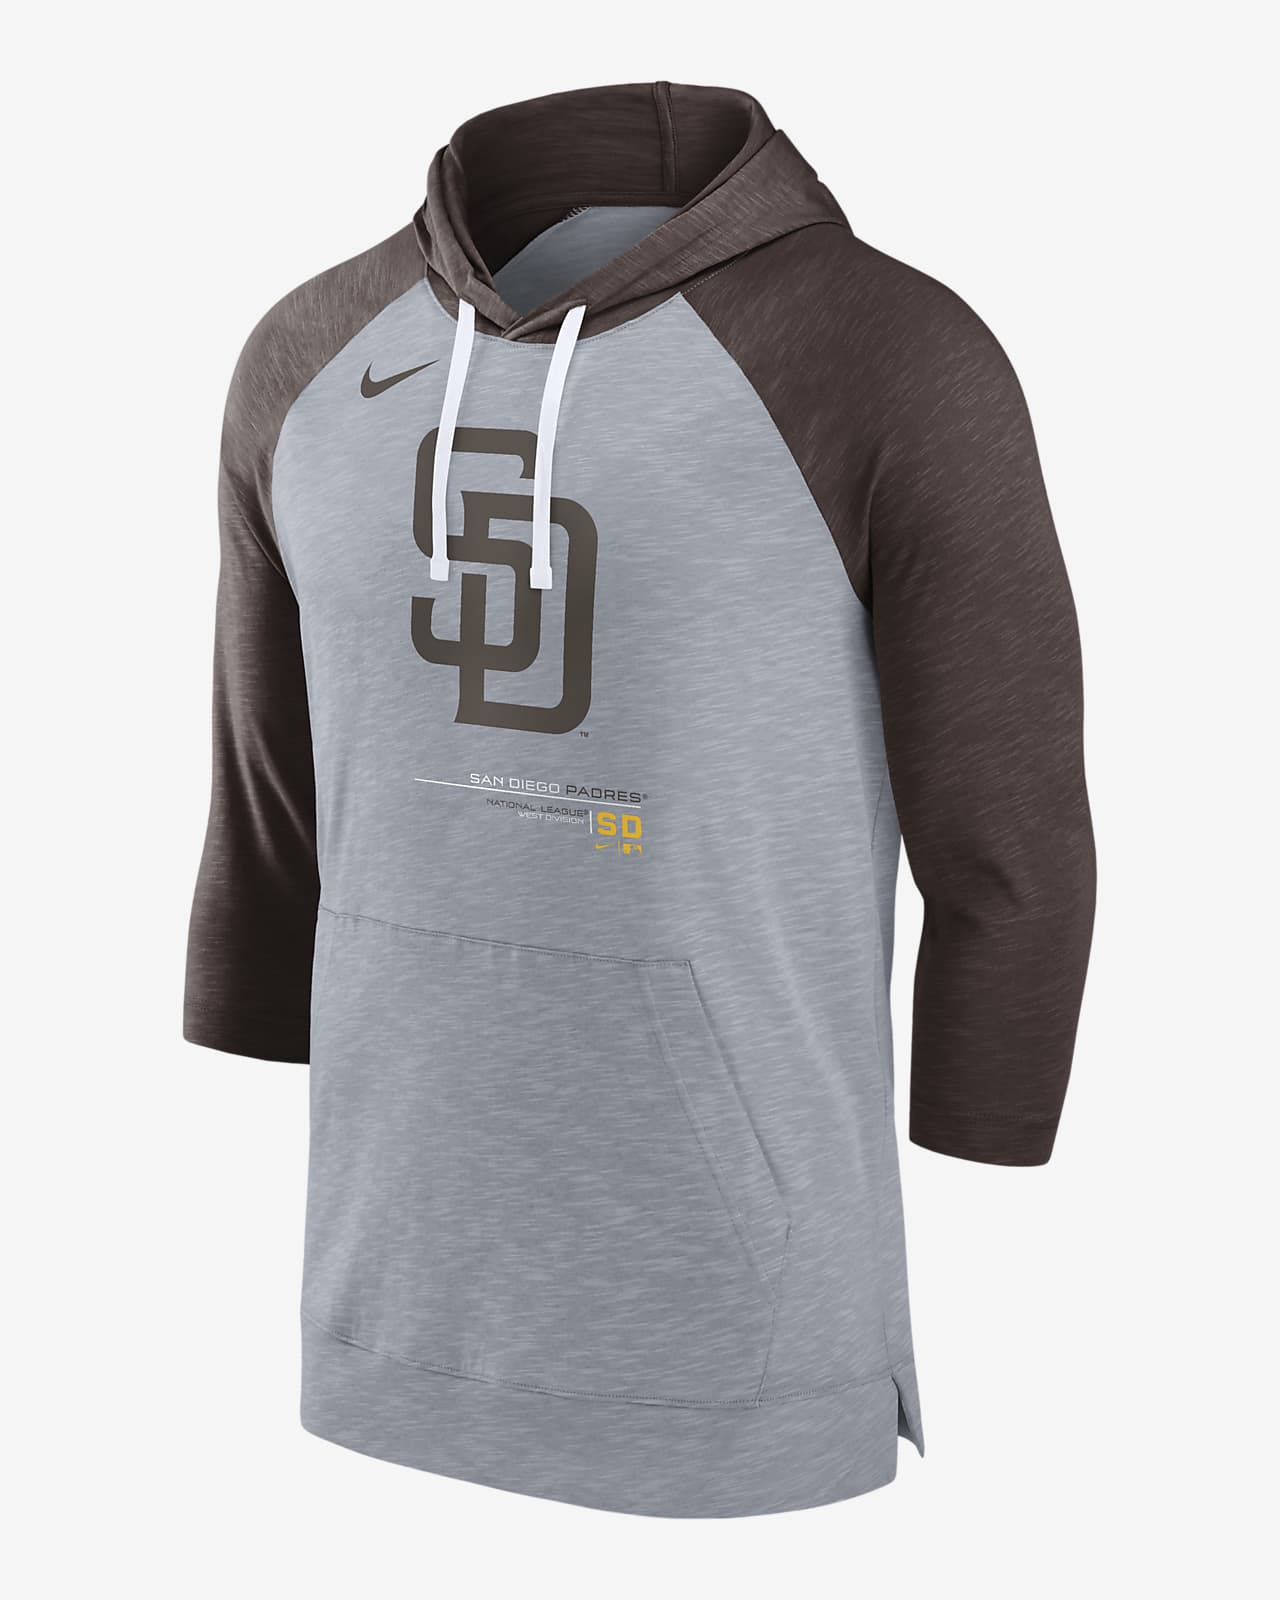 Nike MLB San Diego Padres S/S Baseball Shirt